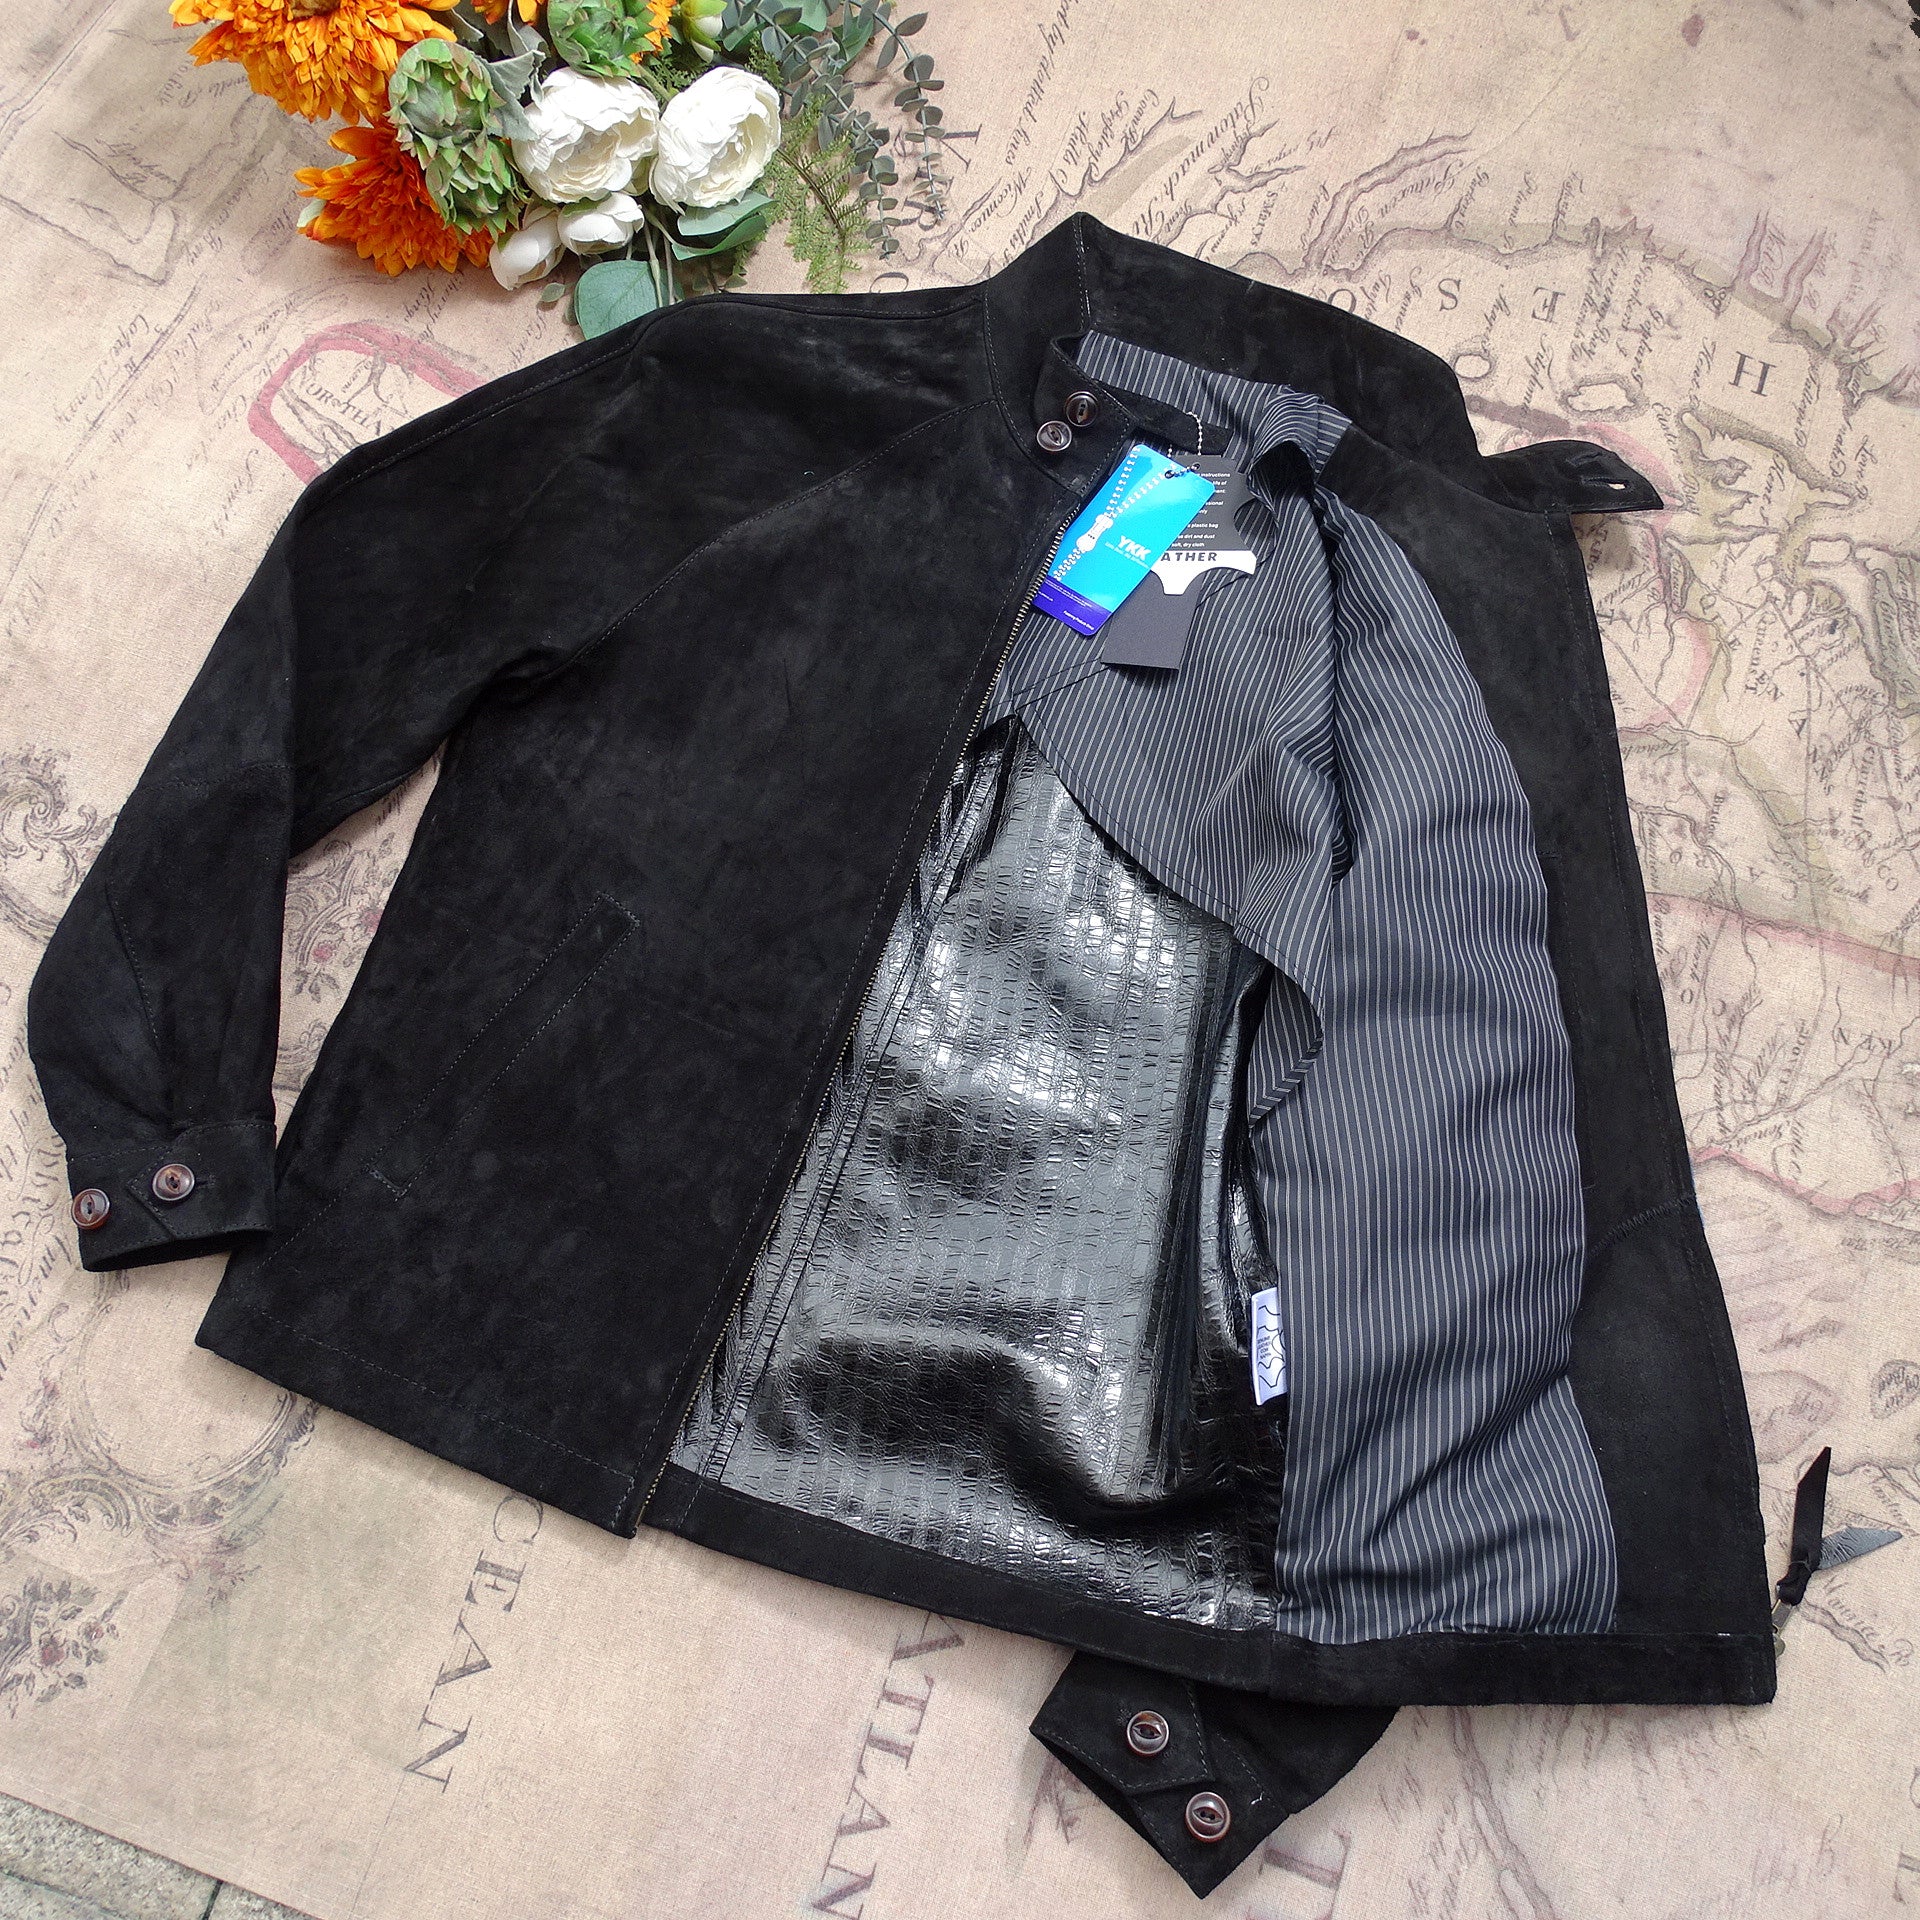 Luxury Italian Leather Jacket Raglan Sleeve Harrington